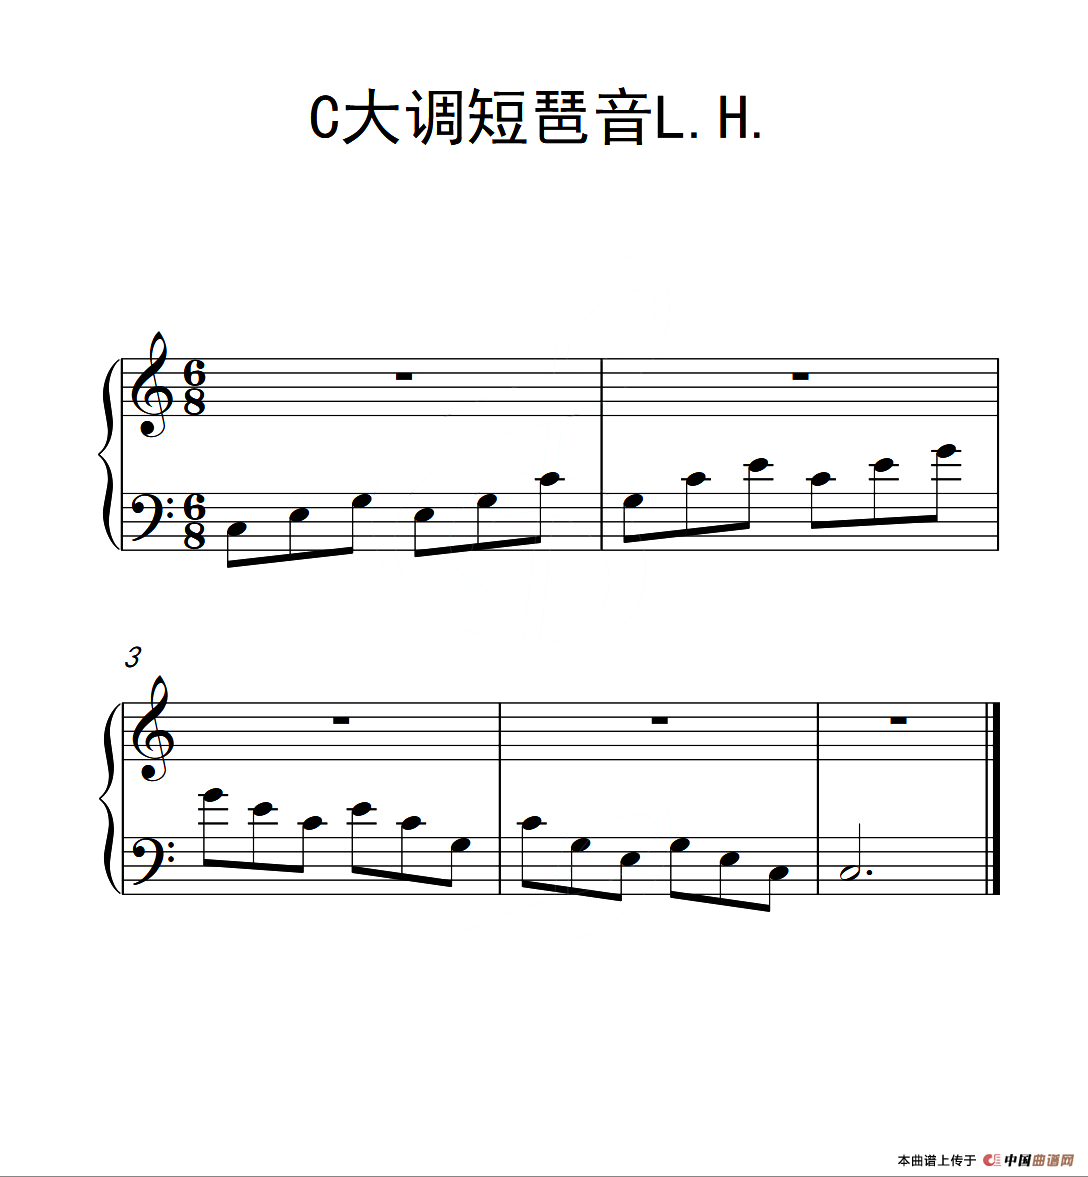 第一级 C大调短琶音L.H.（中国音乐学院钢琴考级